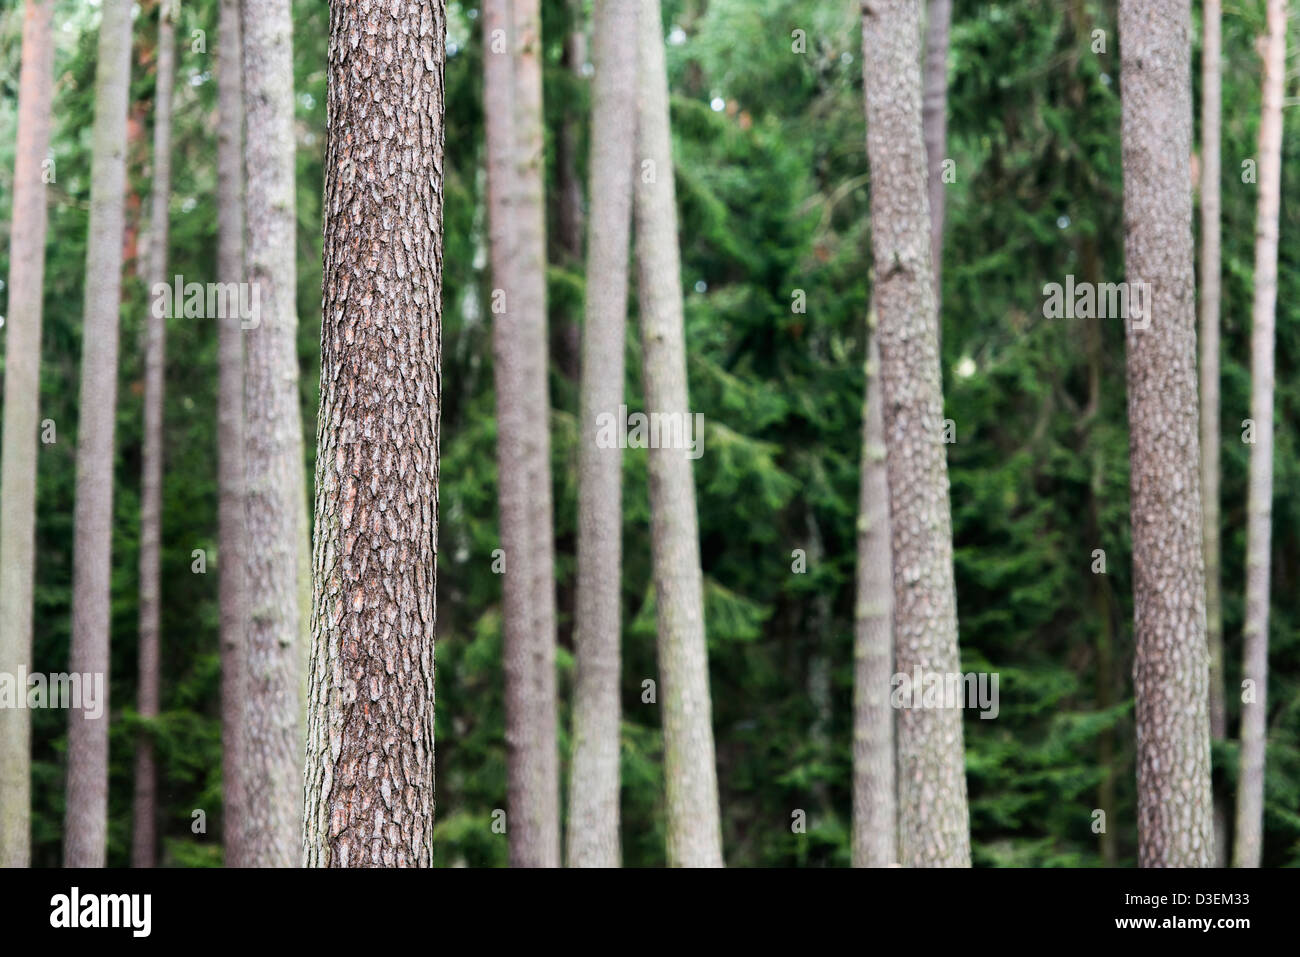 Naturaleza escena con troncos de árboles de pino en el bosque Foto de stock